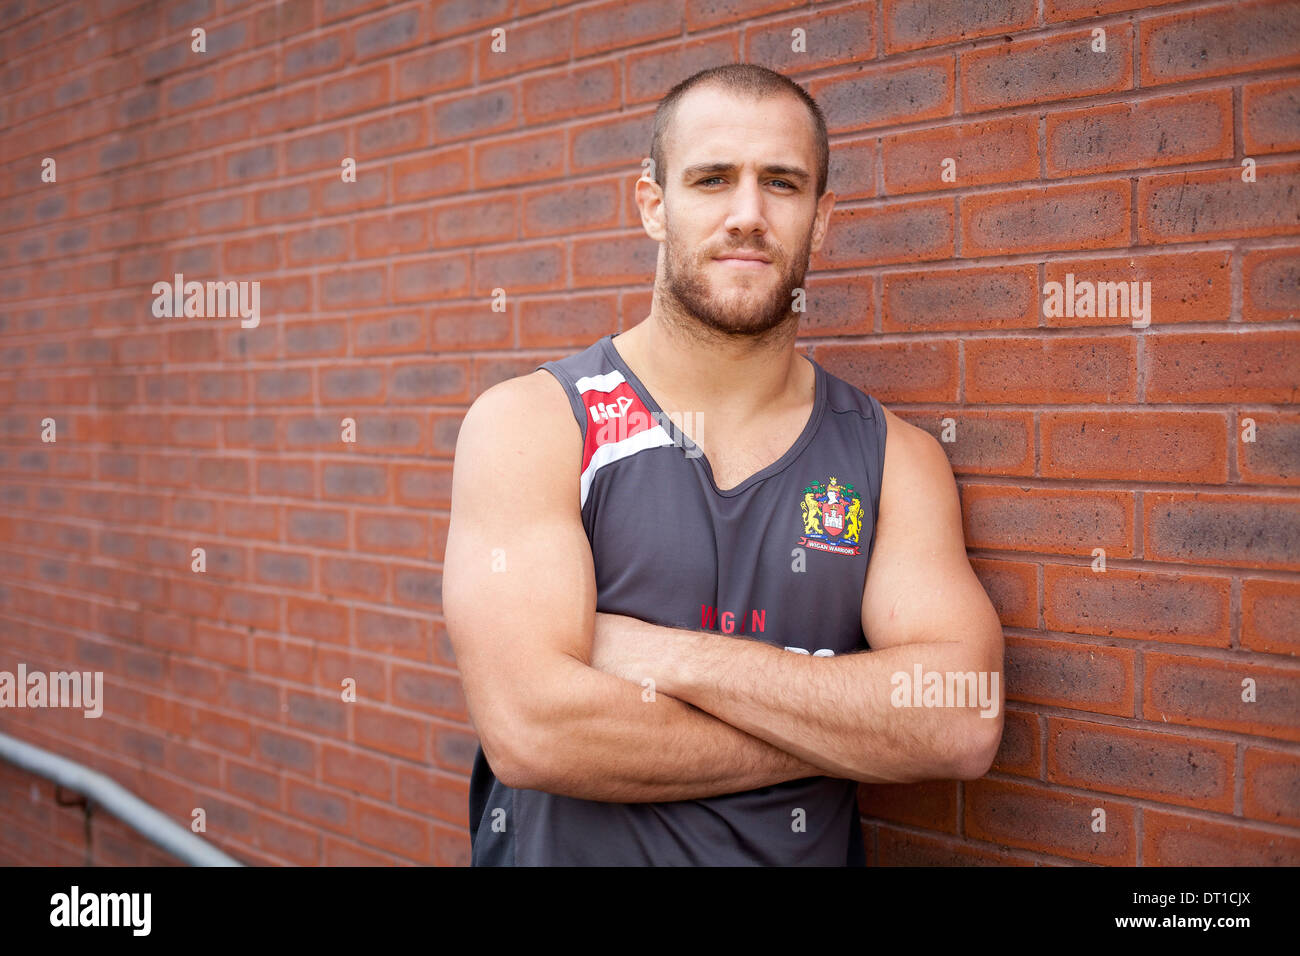 Lee Mossop ist eine professionelle Rugby-Liga-Fußballer für australische Club, Parramatta Eels Stockfoto